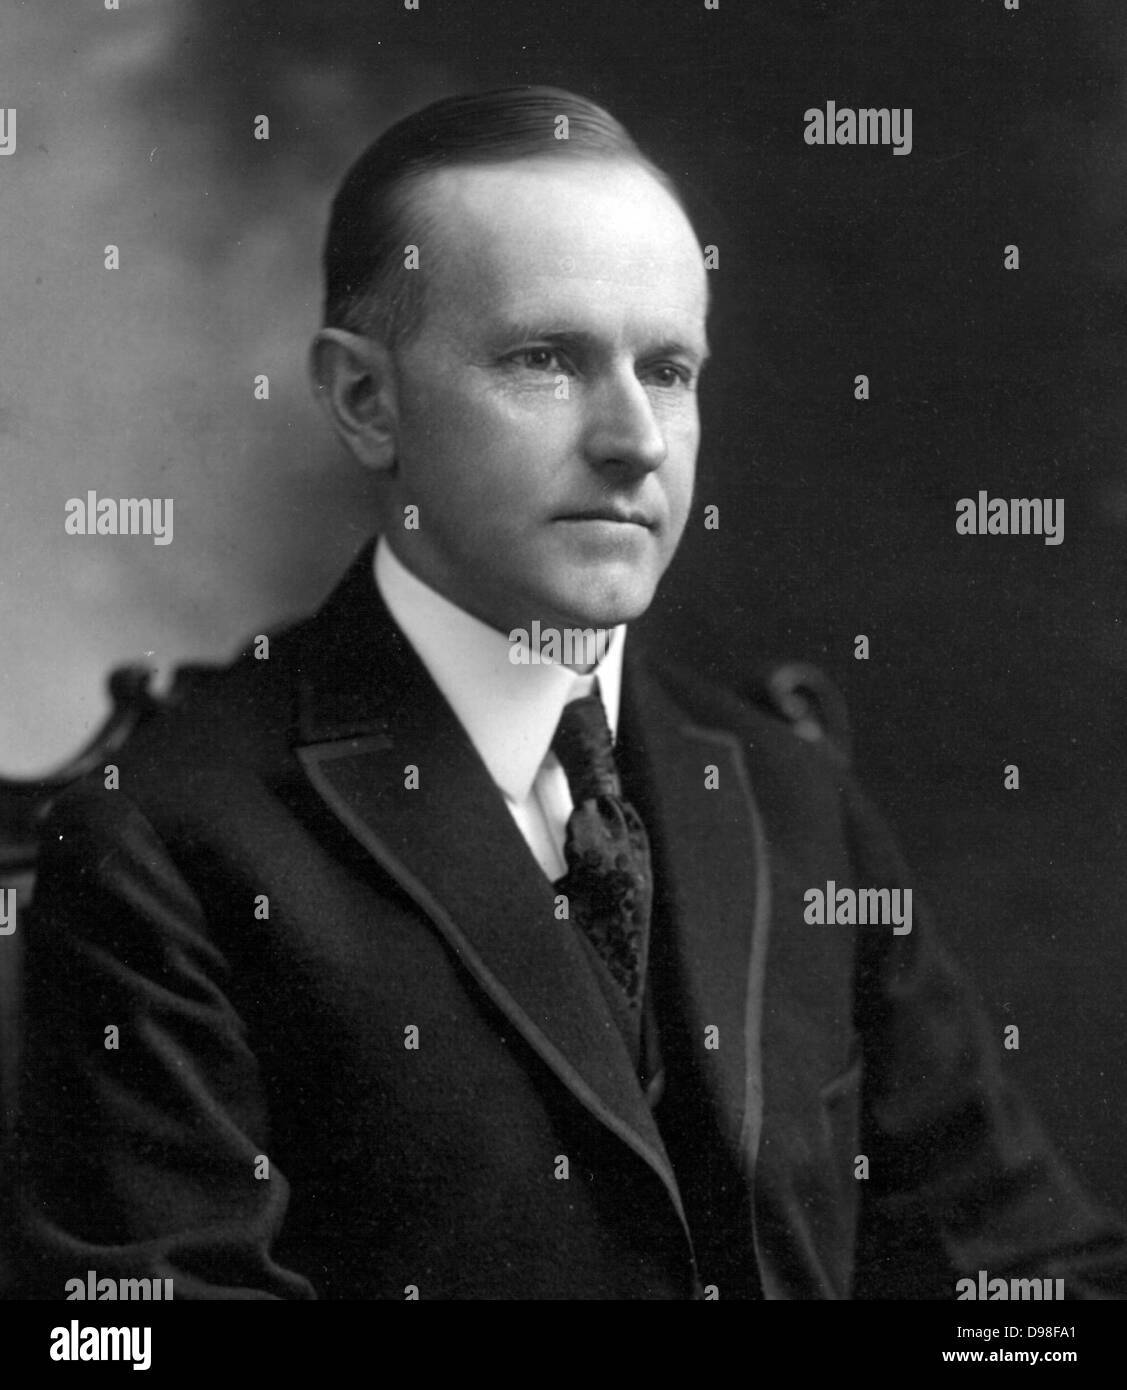 John Calvin Coolidge, Jr. (4 juillet, 1872 5 janvier, 1933) 30e président des États-Unis (1923-1929). Photographié en 1919 Banque D'Images